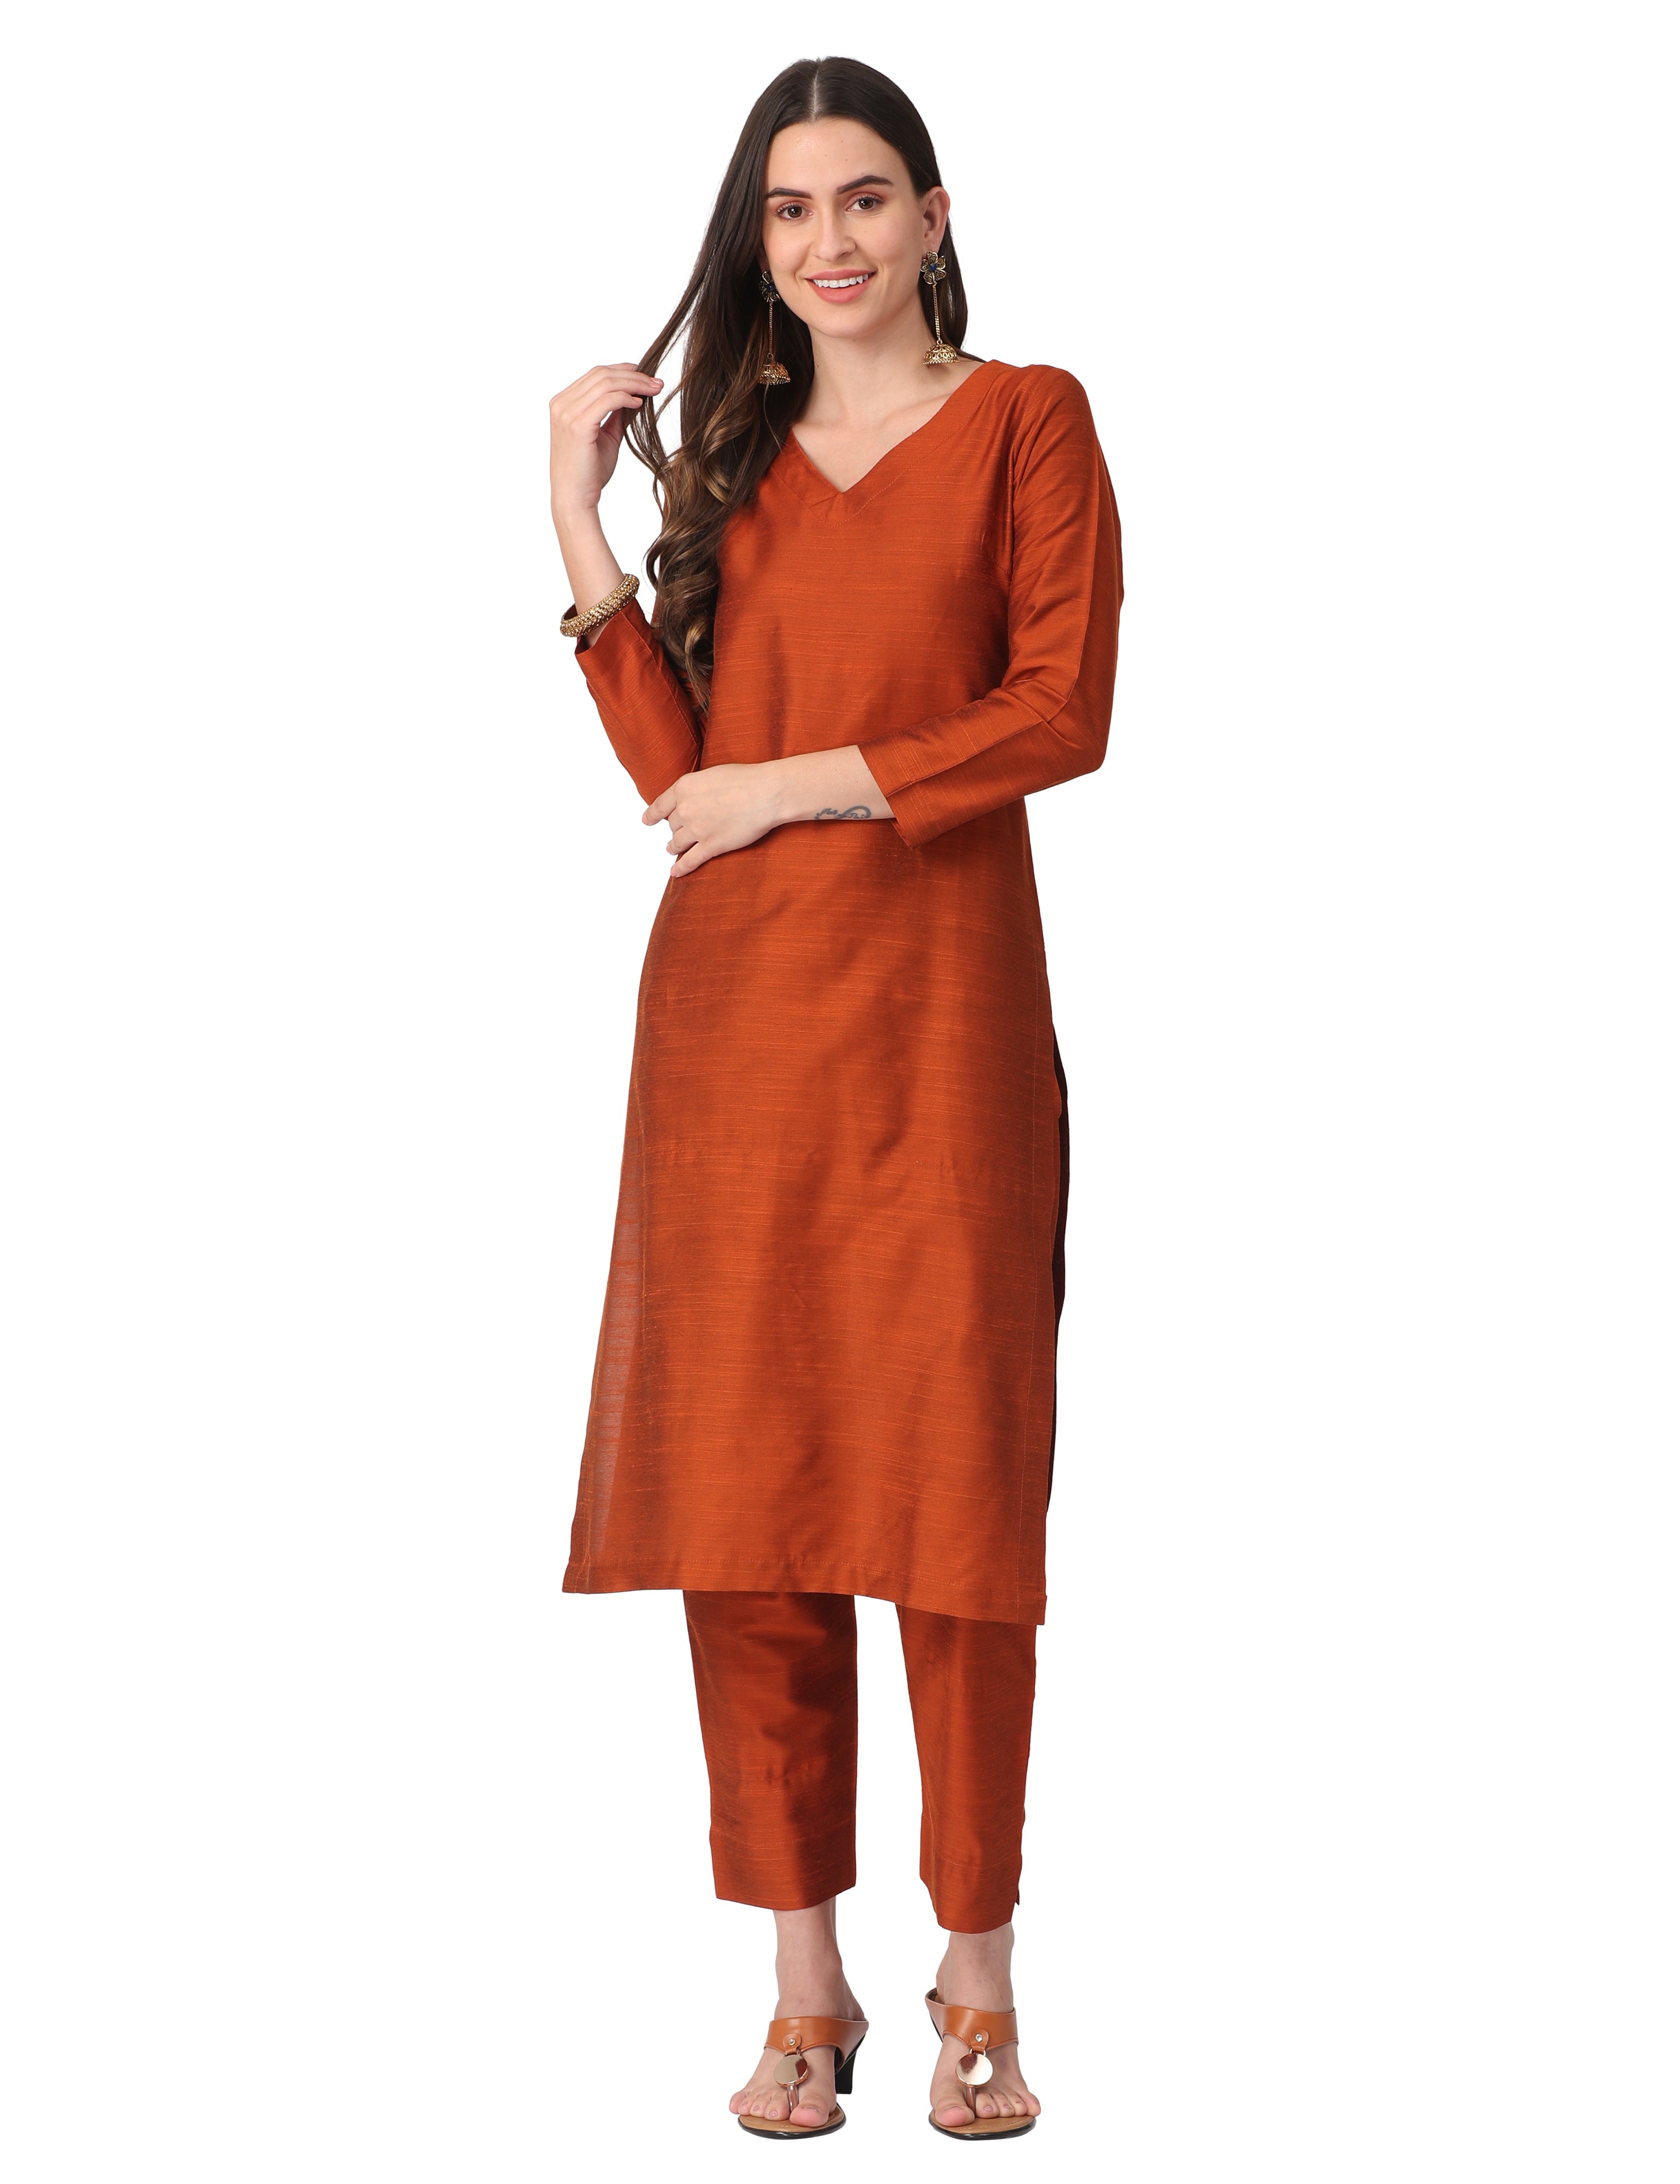 Buy Designer Indian Kurtis Online | Readymade Kurti for Women UK: Orange,  Maroon and Rust